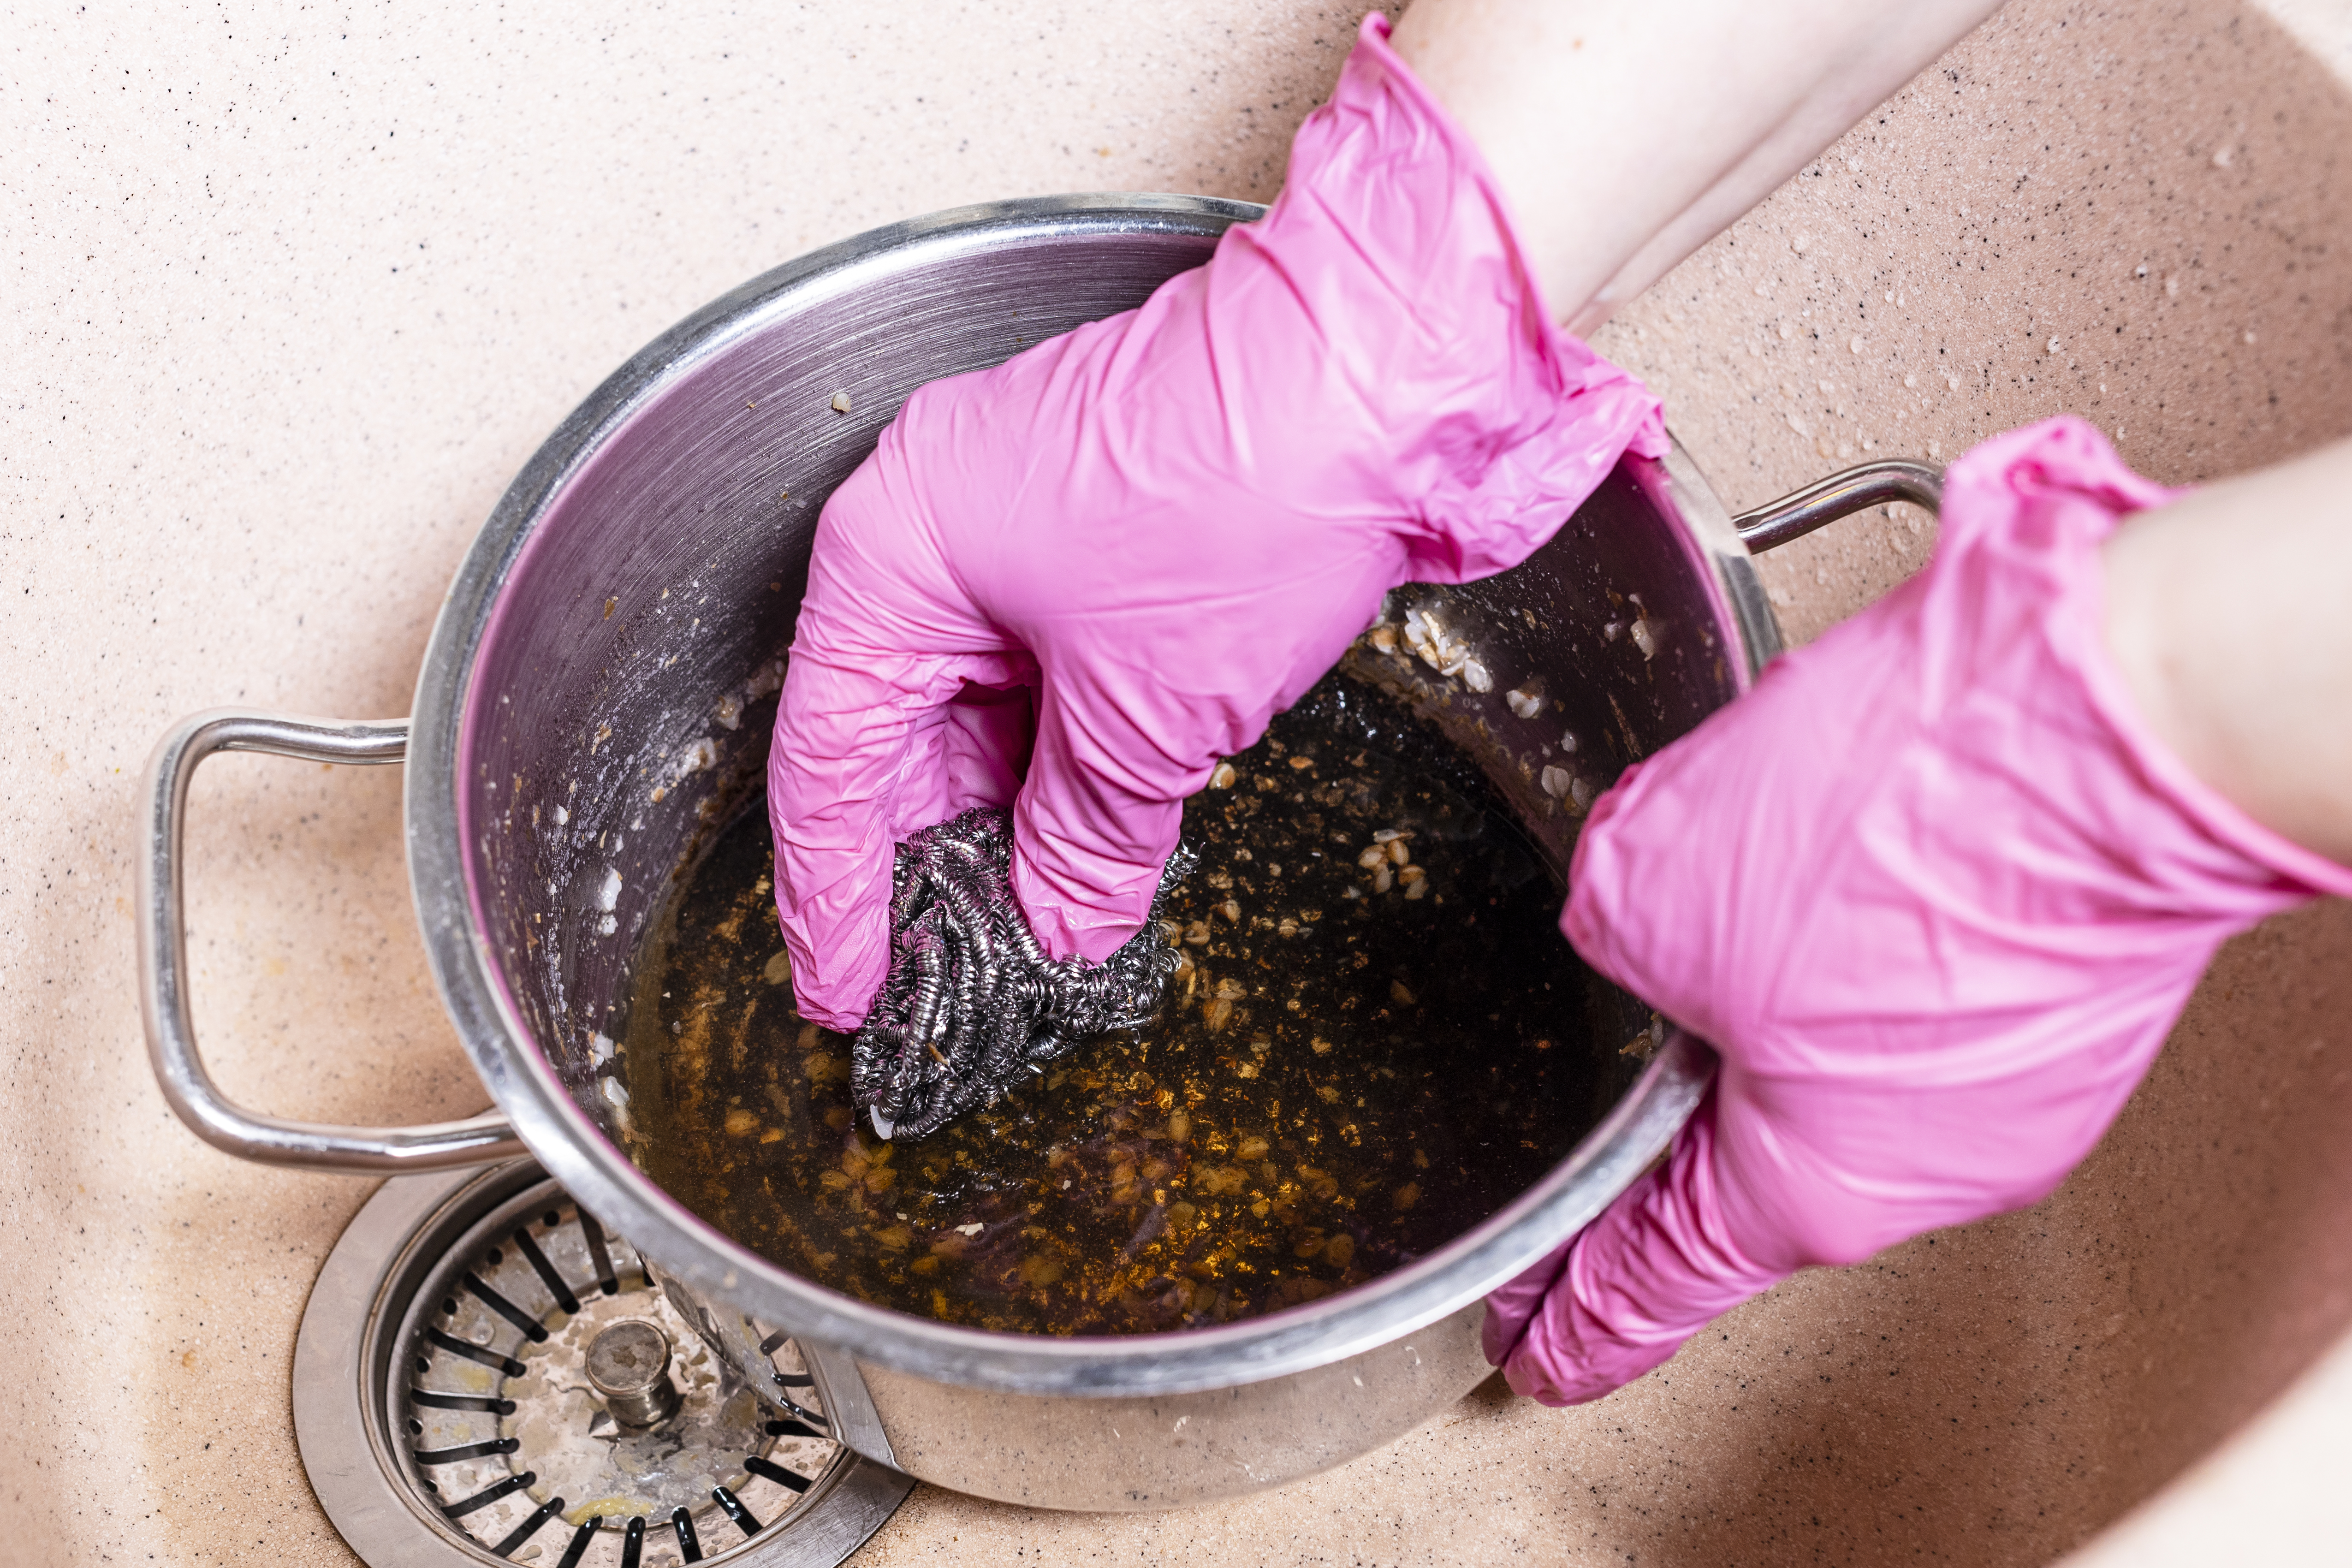 Hogyan lehet gyorsan és egyszerűen eltávolítani a ráégett zsírt a konyhai  edényekről? - kiskegyed.hu